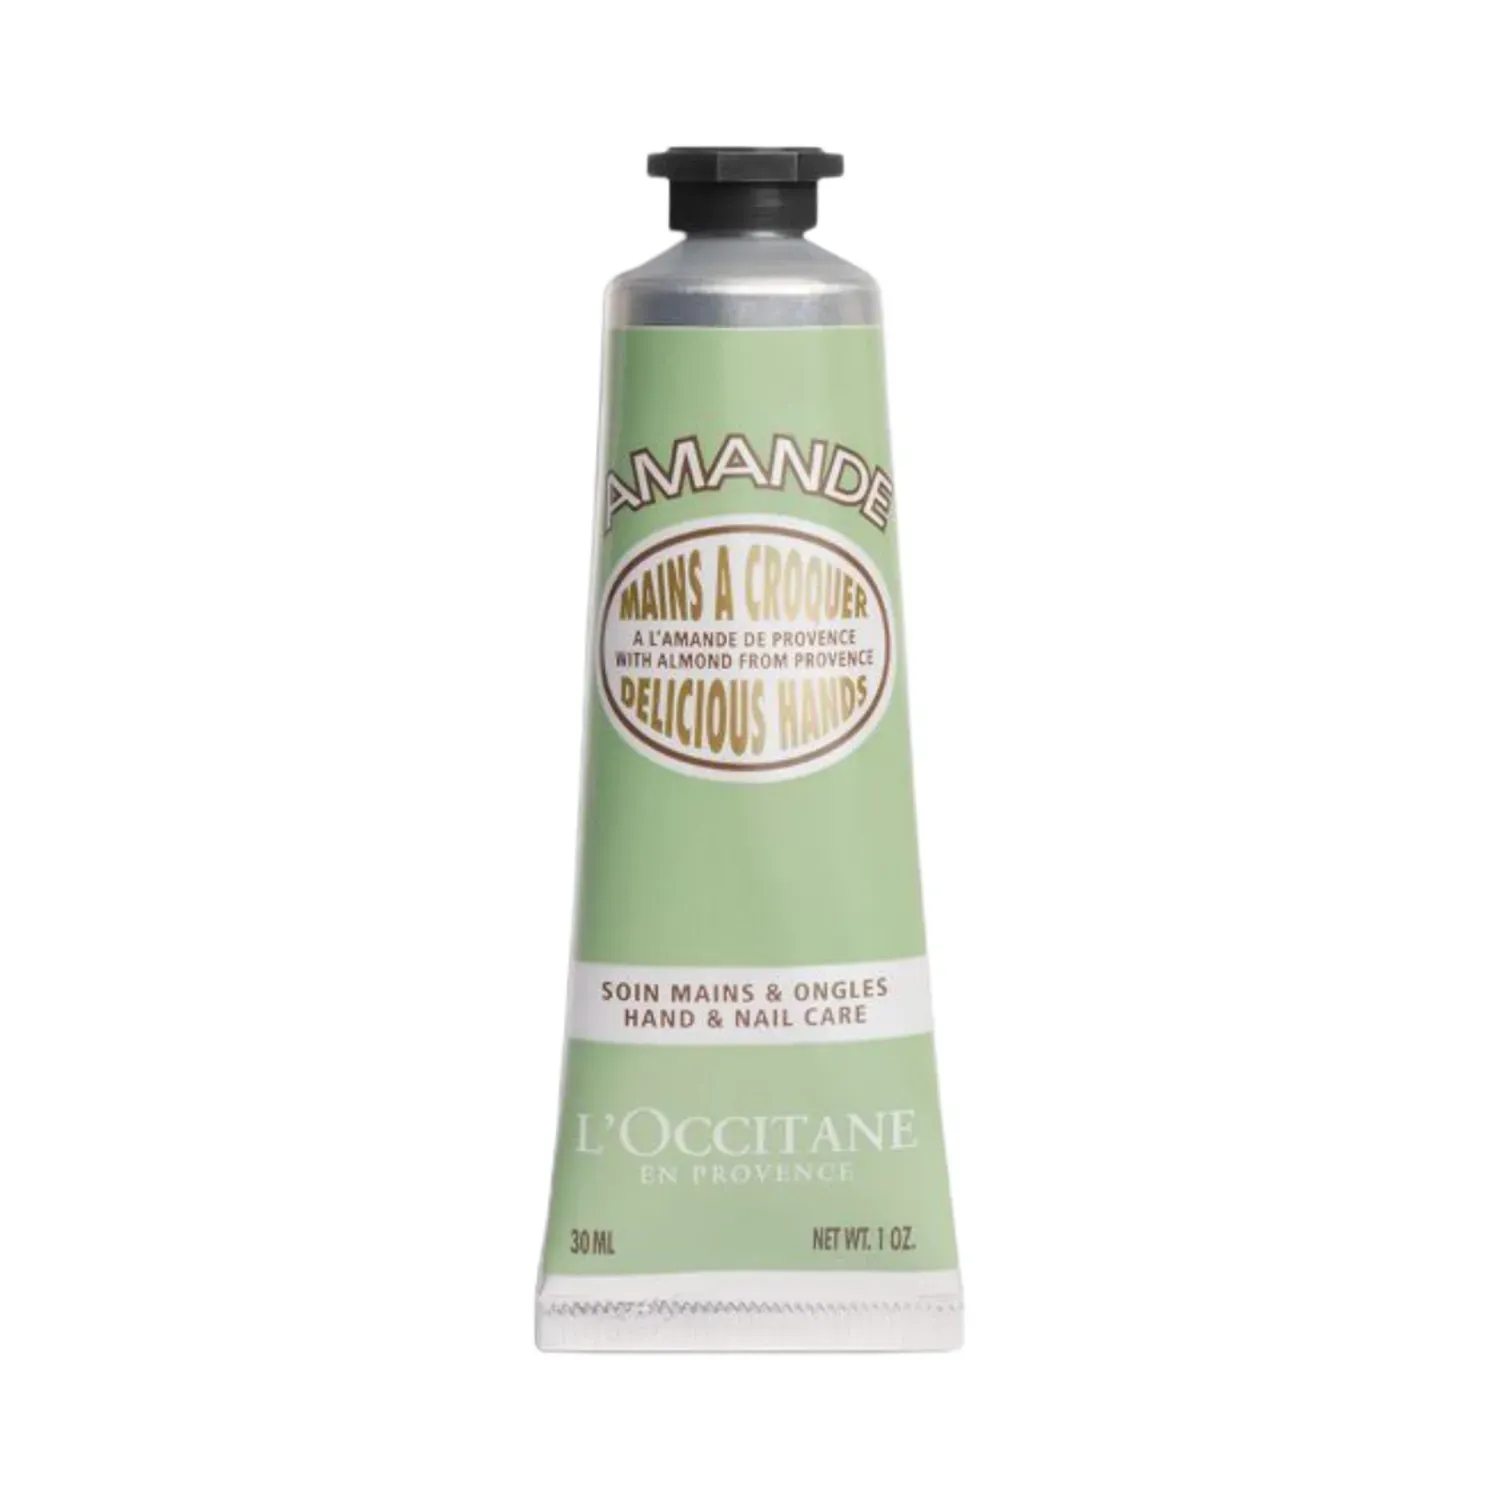 L'occitane | L'occitane Almond Delicious Hand Cream - (30ml)